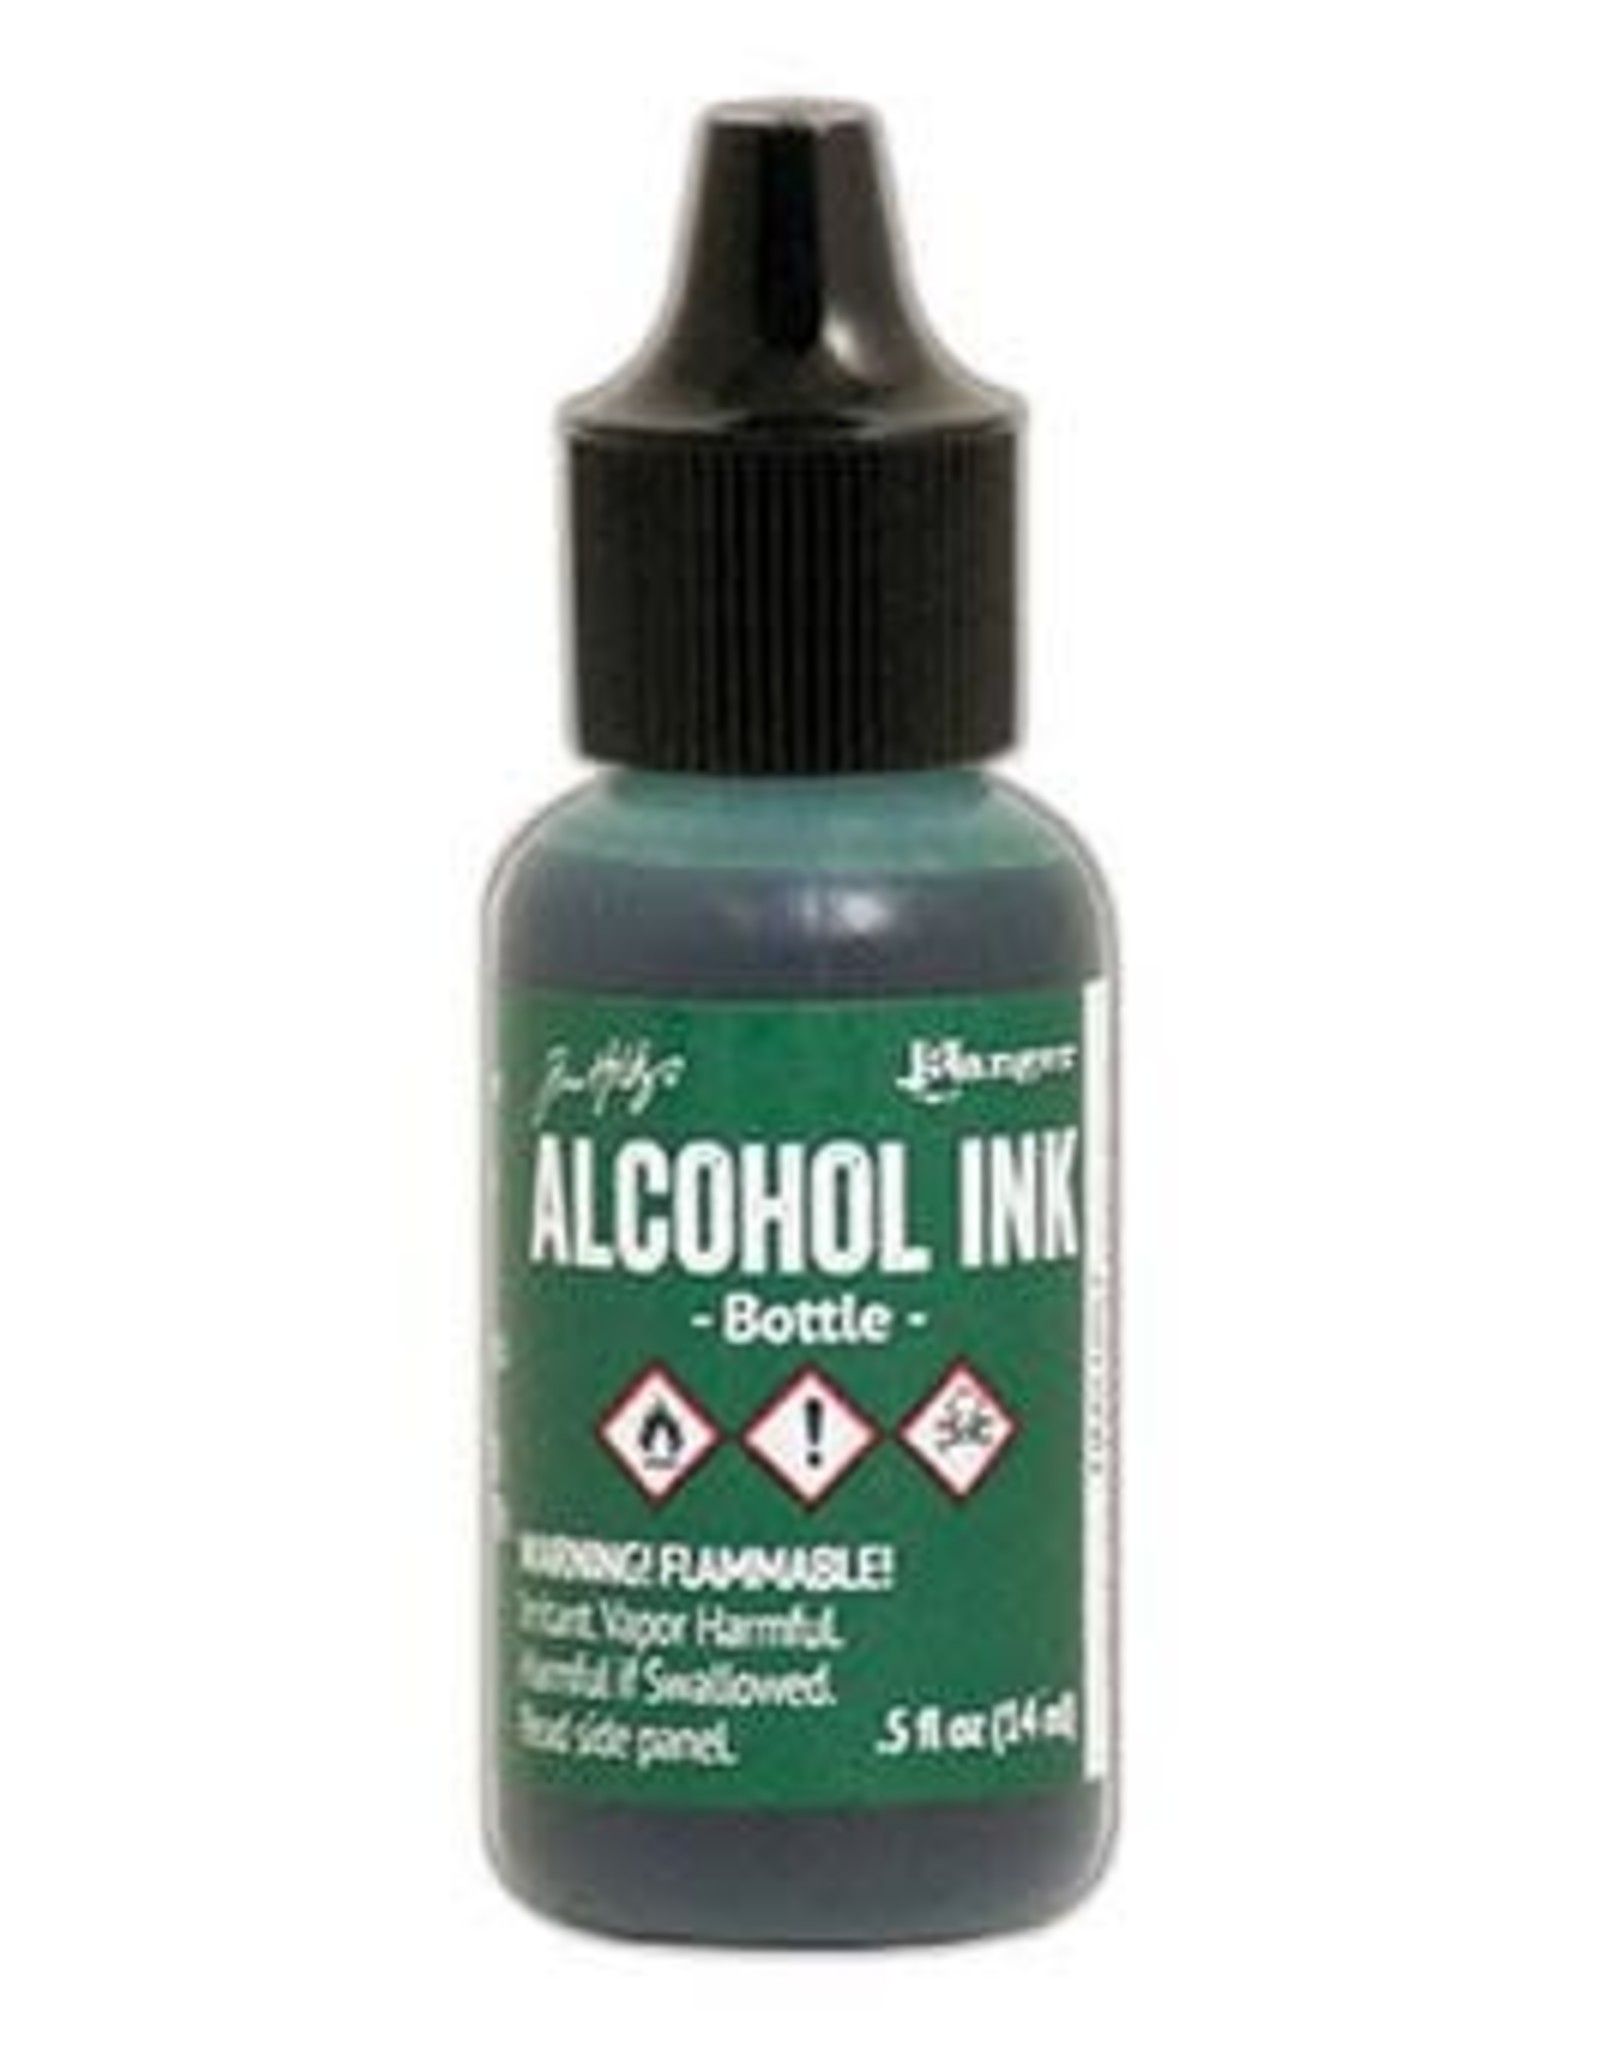 Tim Holtz - Ranger Alcohol Ink 1/2 oz Bottle